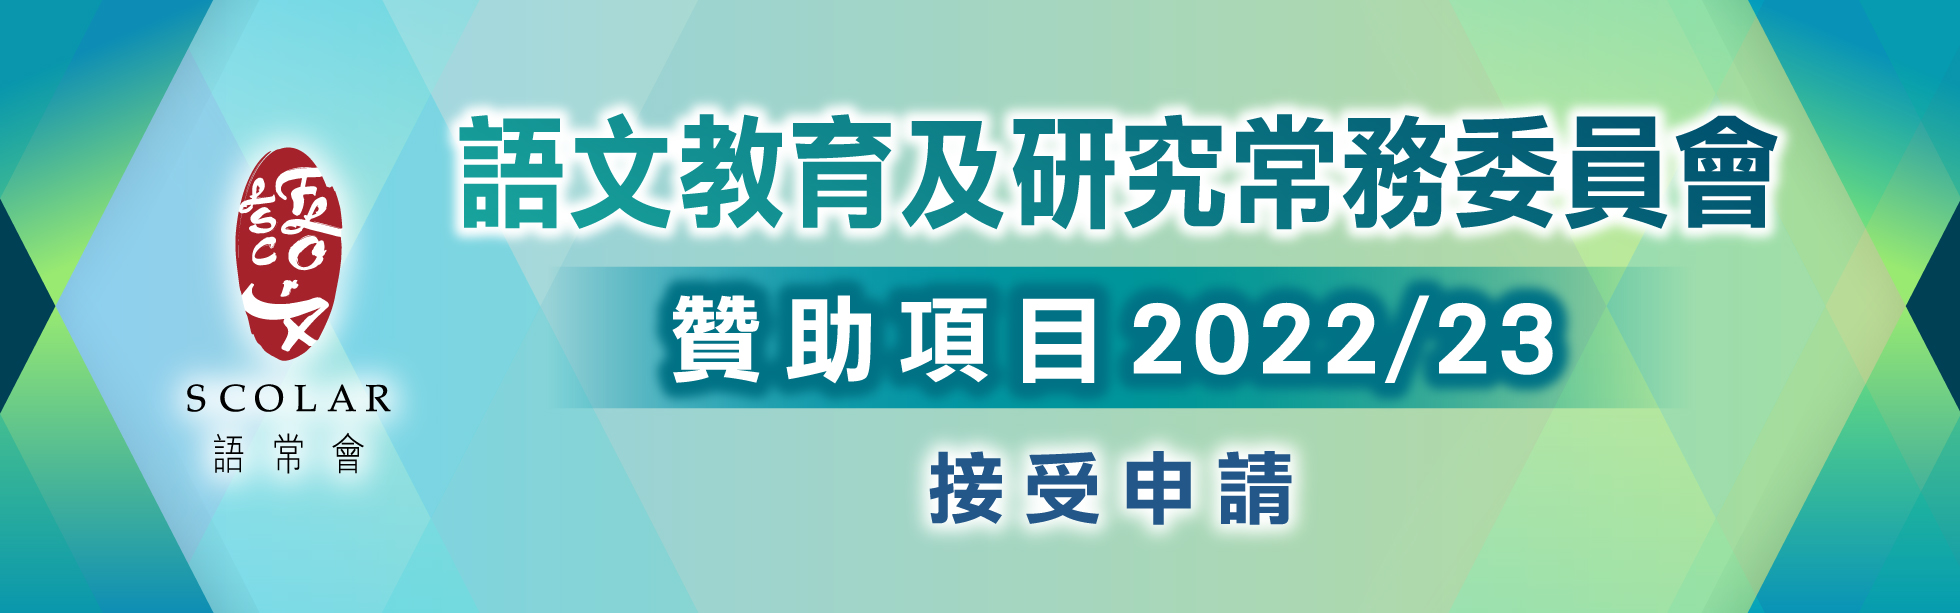 贊助項目2022/23 (現正接受申請)